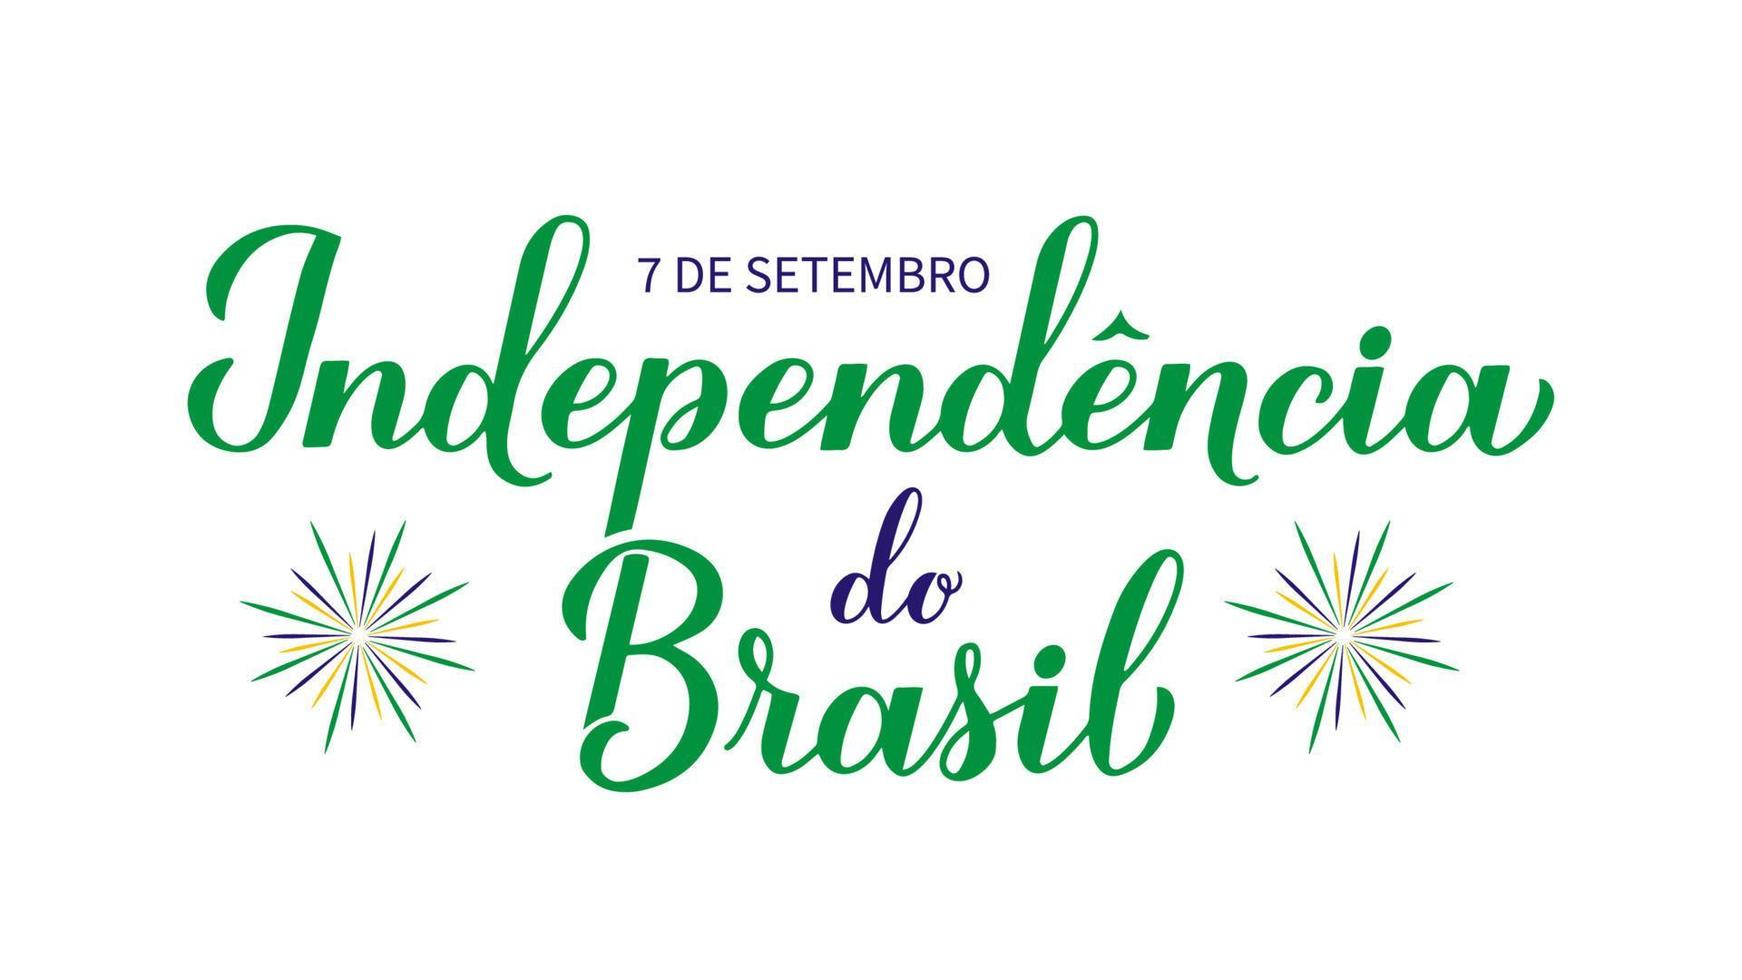 lettrage à la main de calligraphie du jour de l'indépendance du brésil en portugais. fête brésilienne célébrée le 7 septembre. modèle vectoriel pour affiche de typographie, bannière, carte de voeux, flyer, etc.